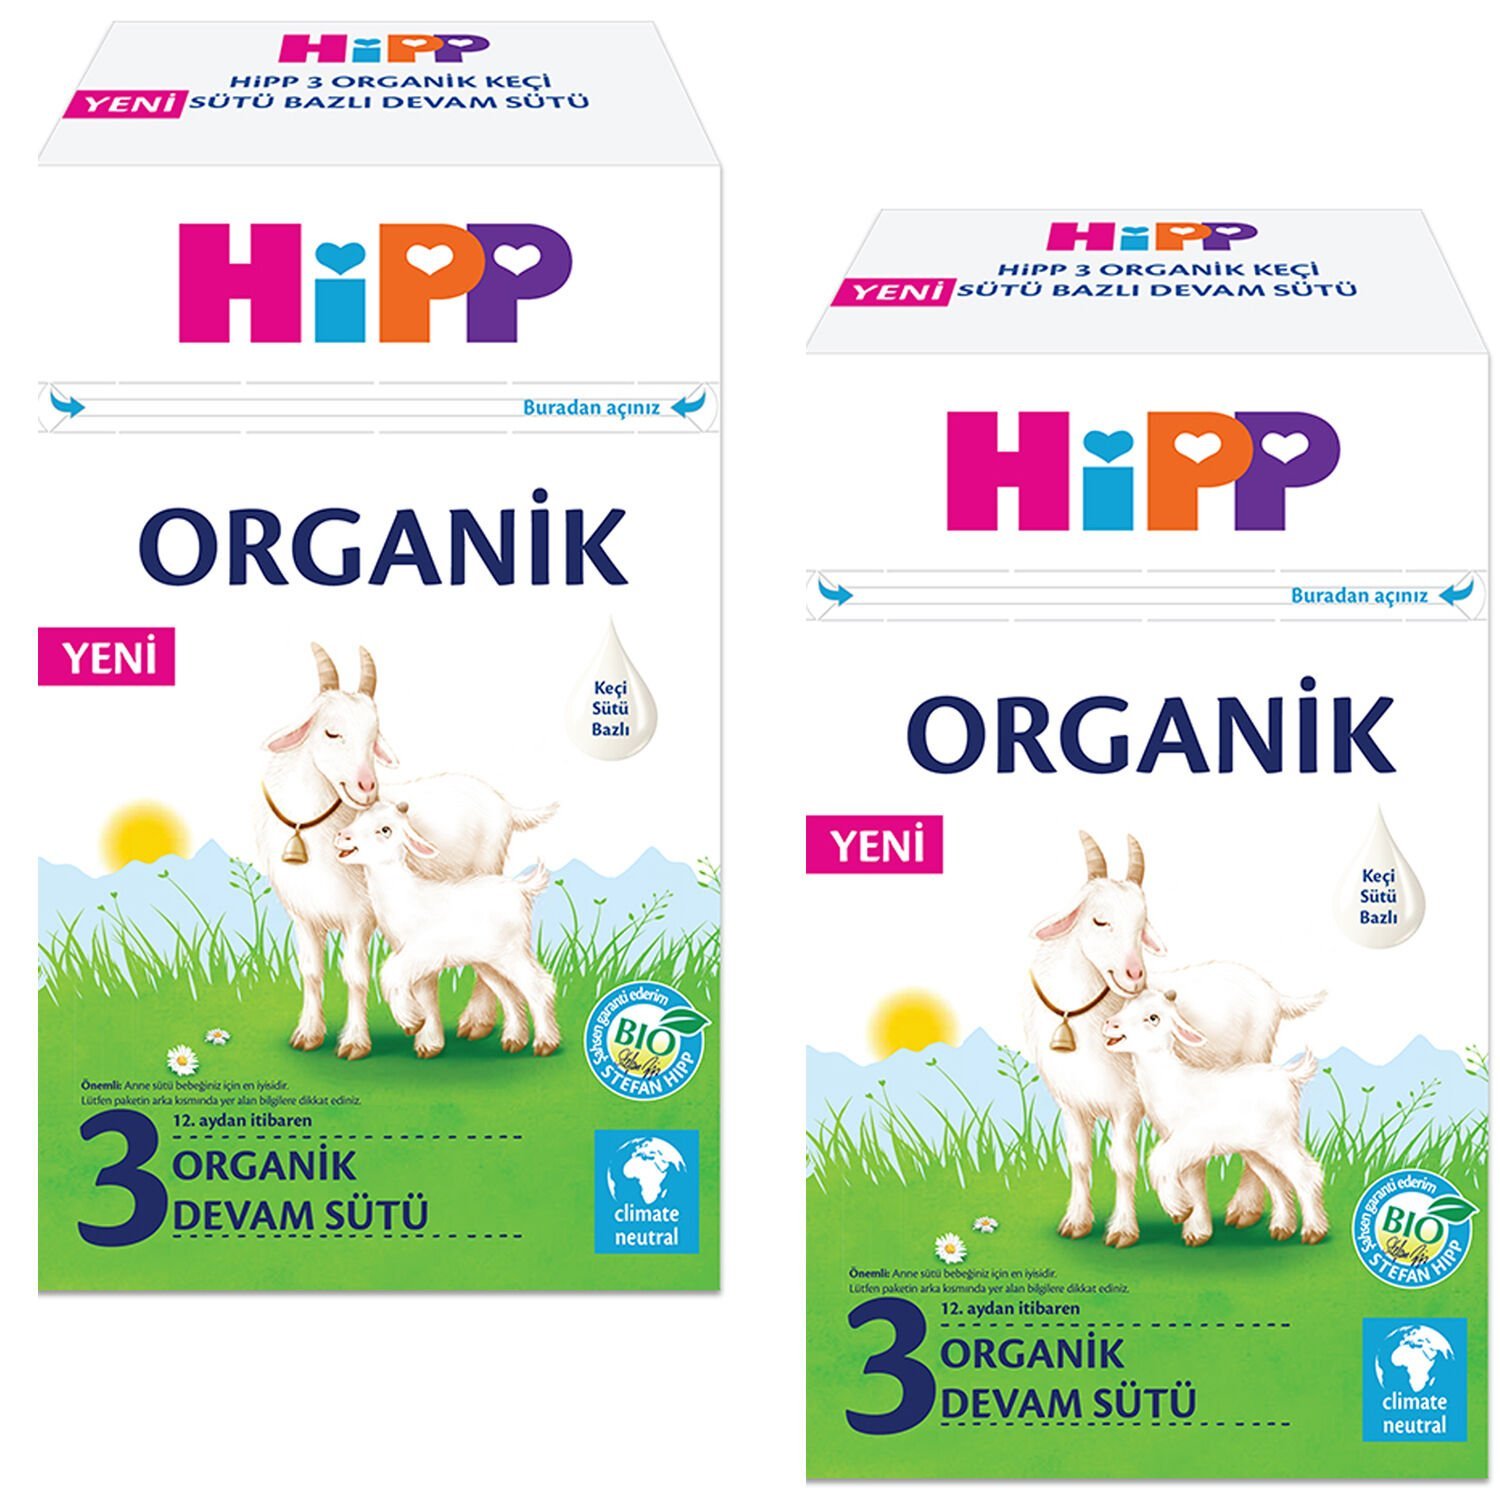 Hipp 3 Organik Keçi Sütü Bazlı Devam Sütü 400 gr 2 ADET